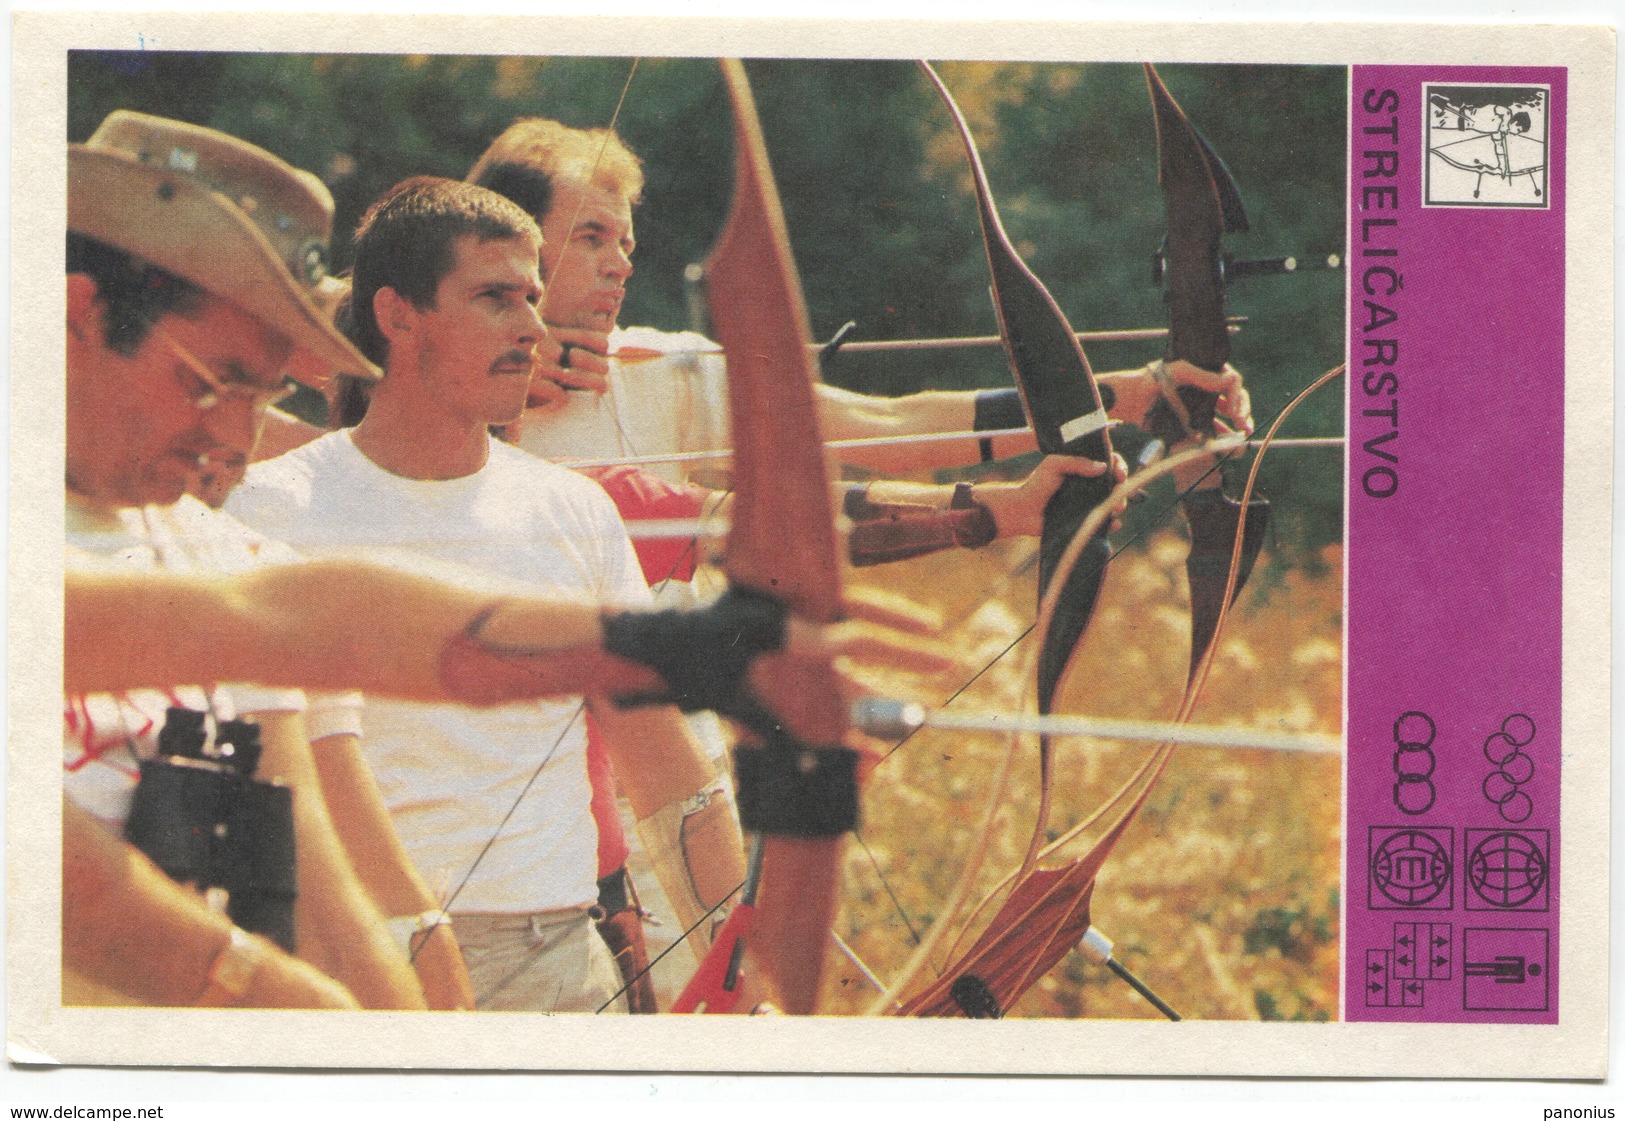 Archery - SVIJET SPORTA CARD, Special Issued, 1981. - Archery